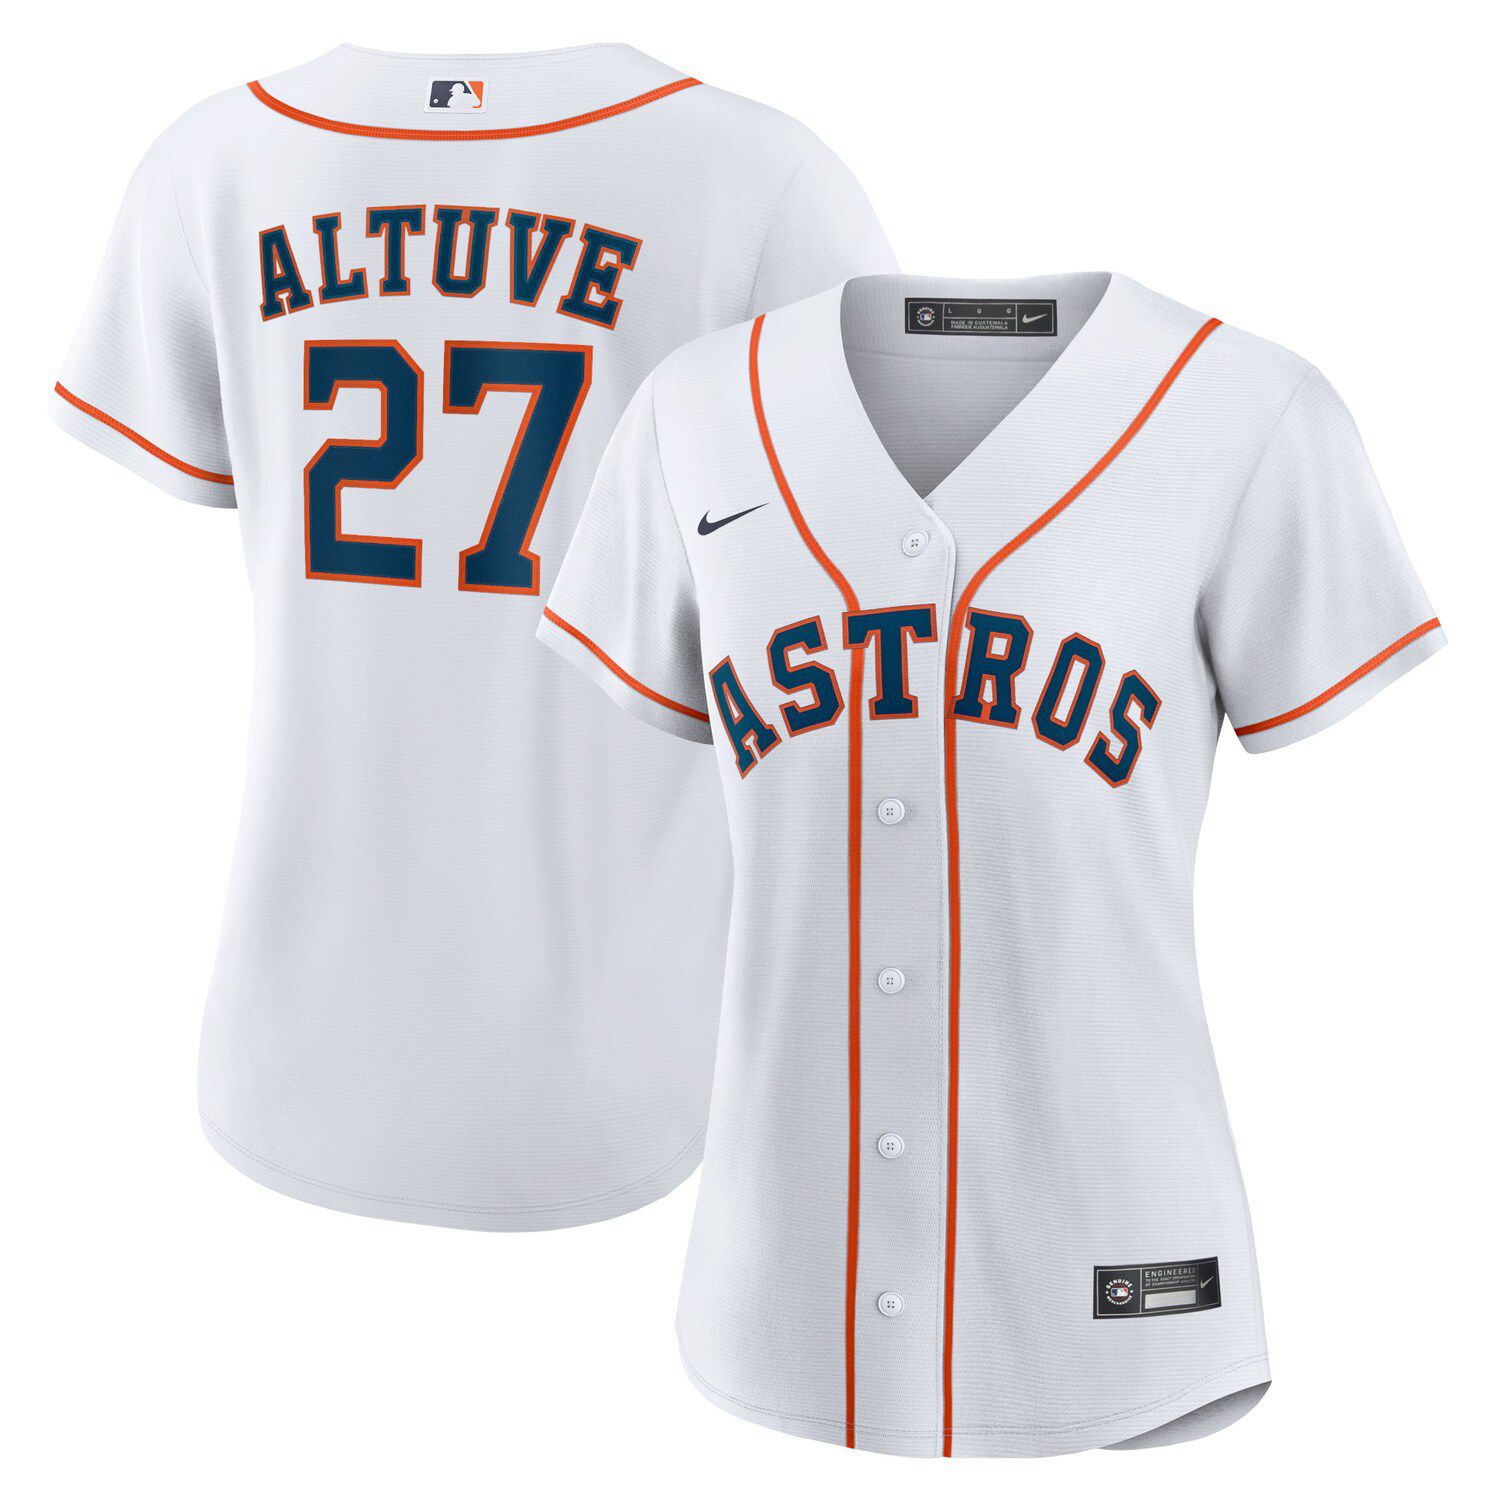 Jose Altuve Astros jersey